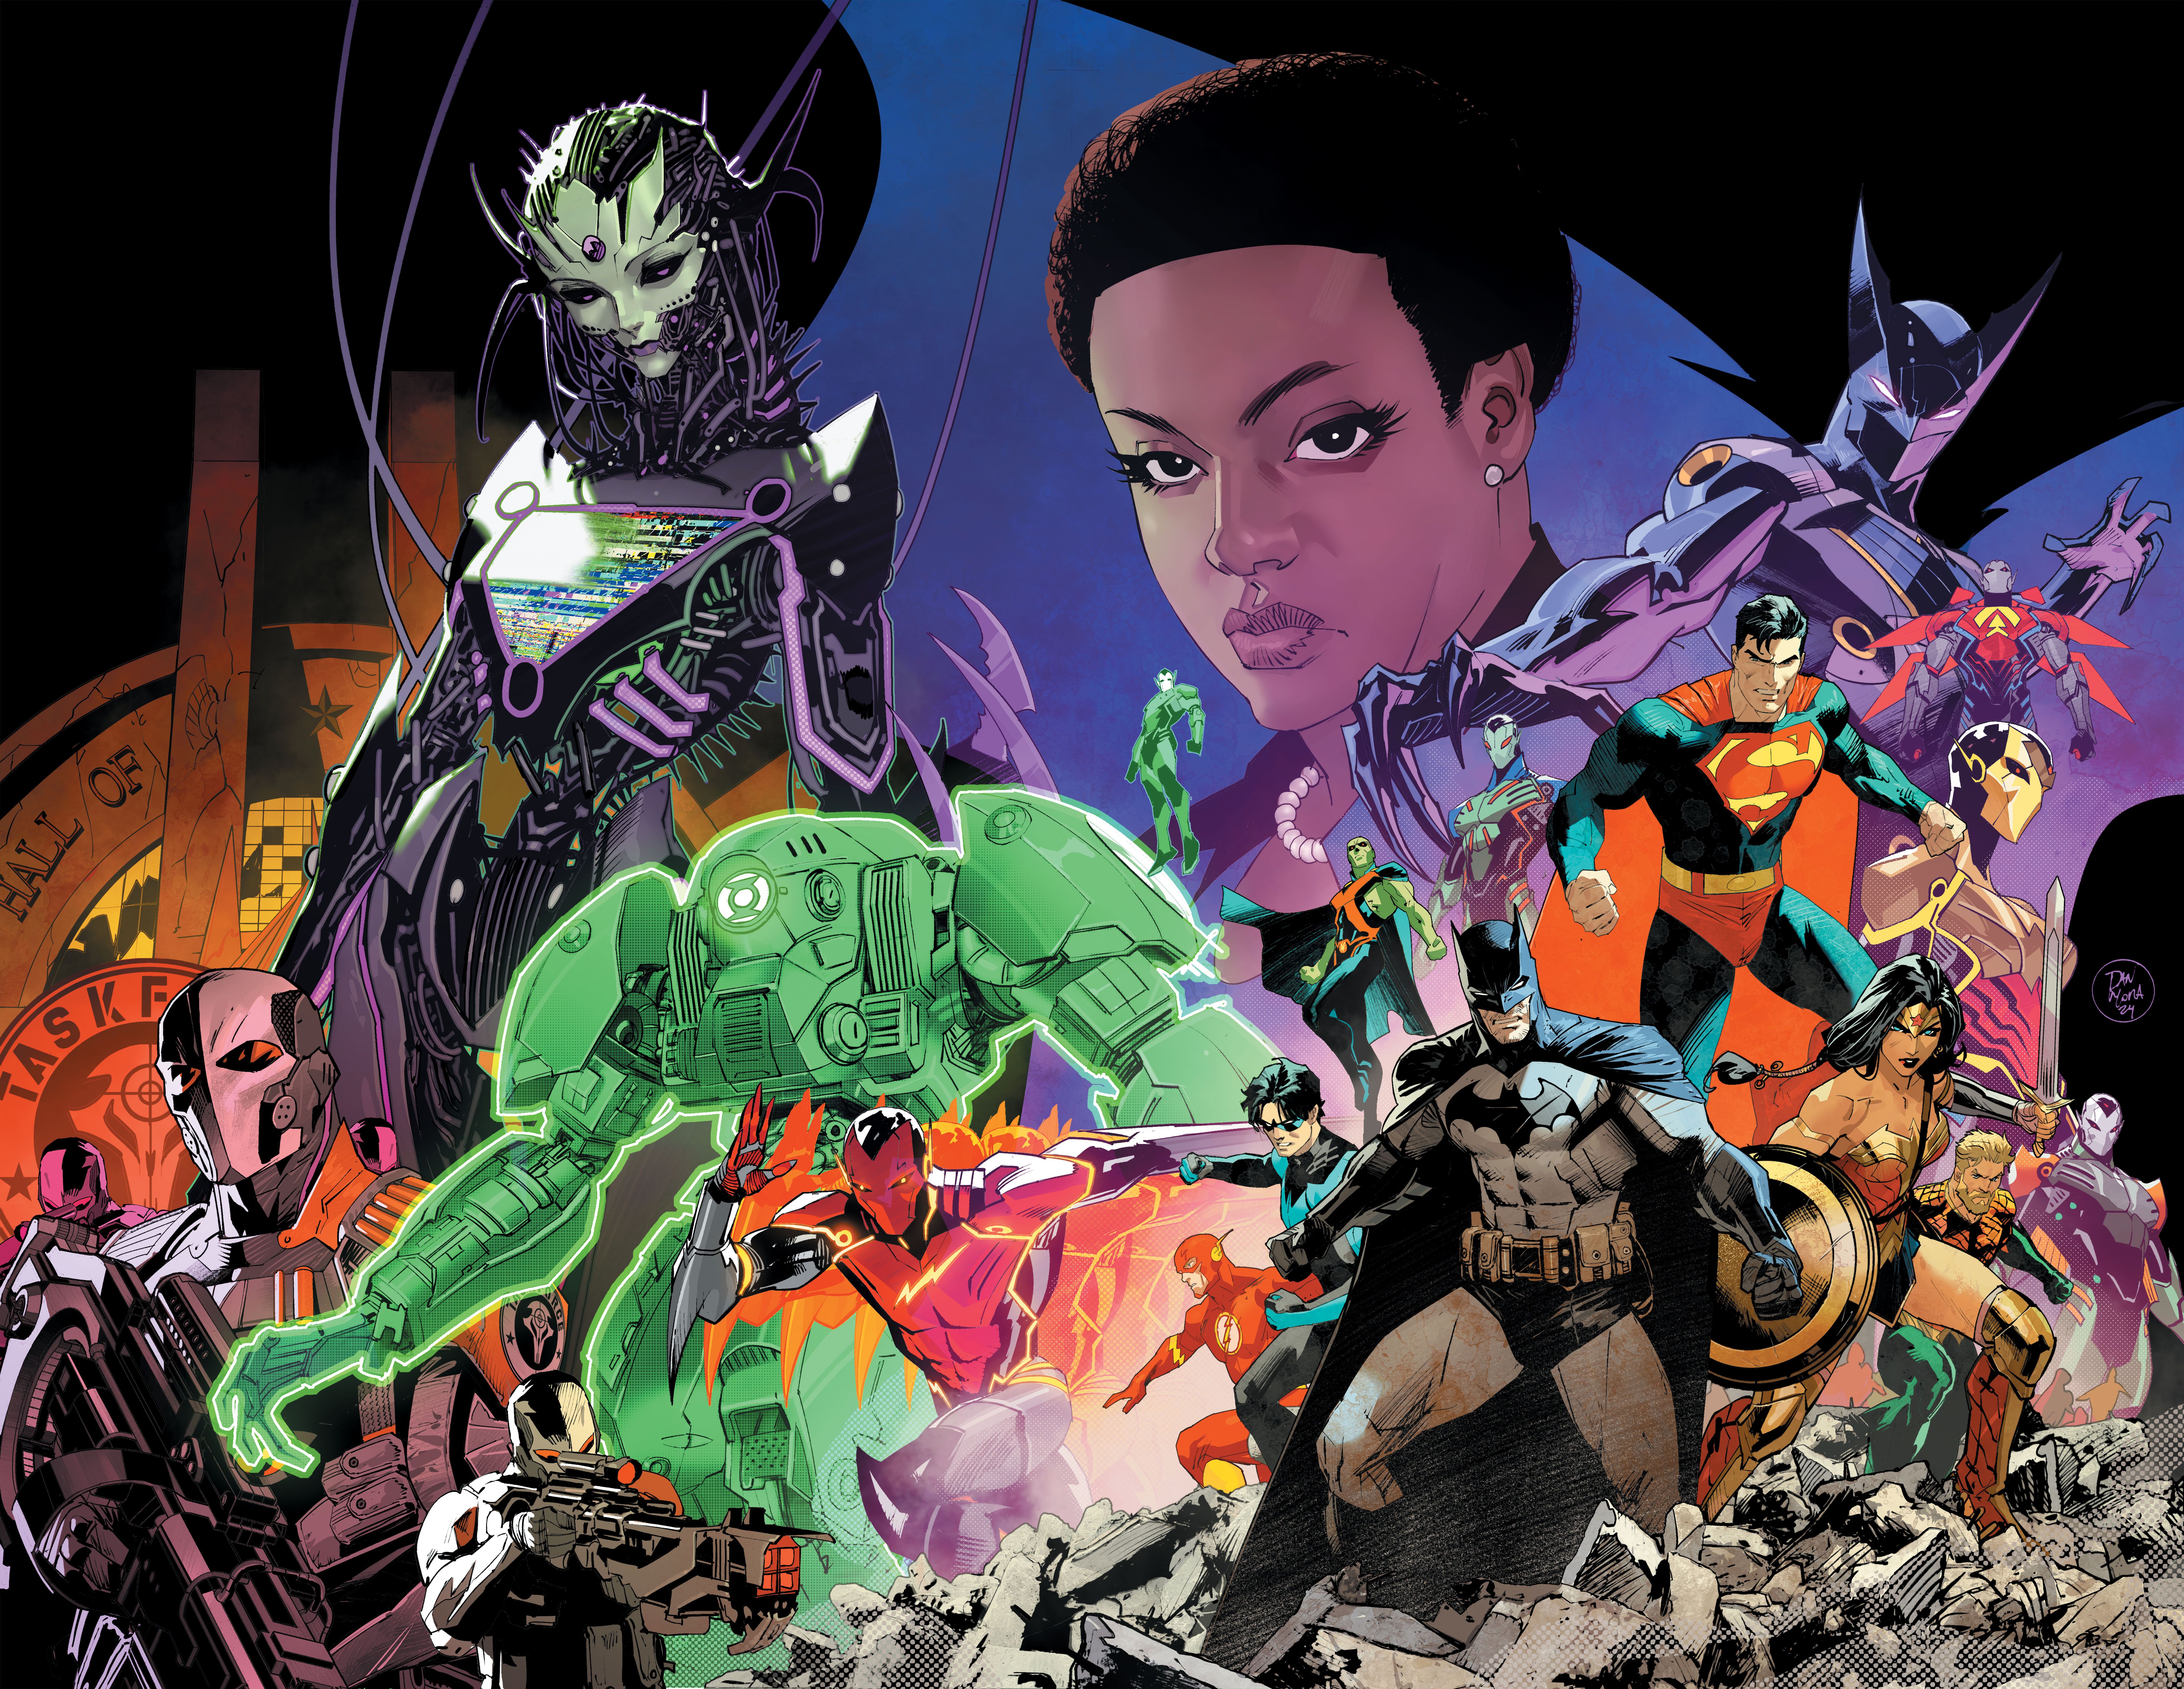 Capa principal de Absolute Power 1: a Liga da Justiça posa com robôs Amazo e outros grandes vilões, como Amanda Waller.